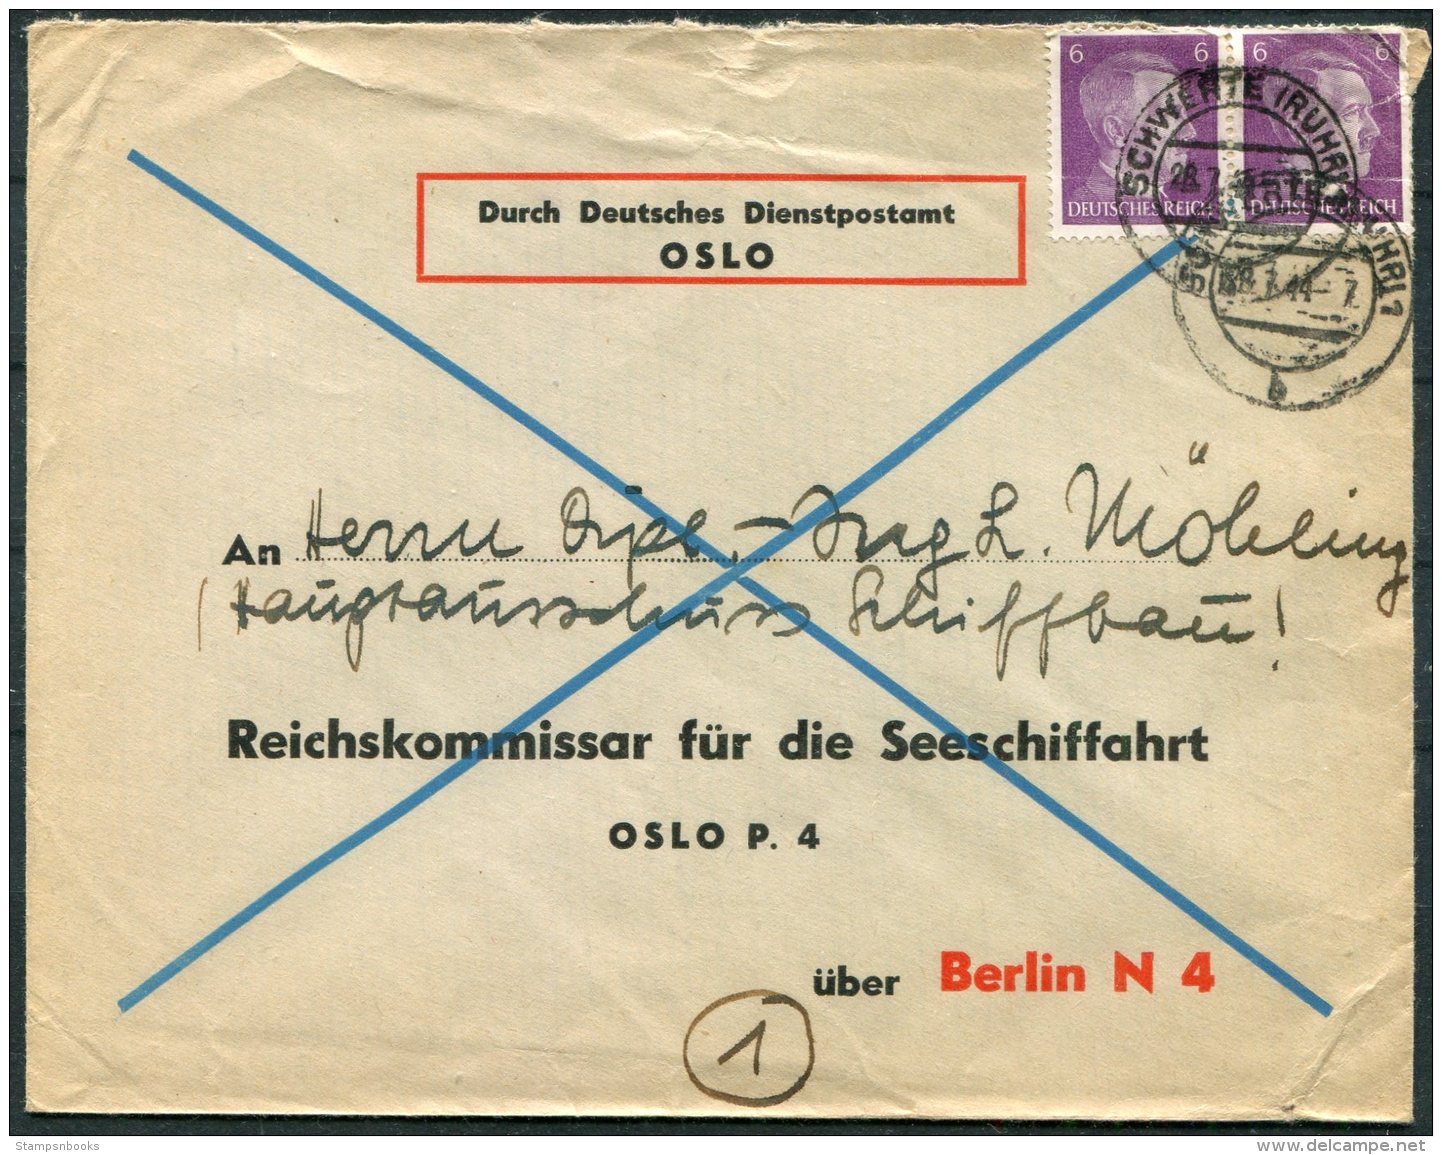 1944 Norway Germany, Durch Deutsches Dientspostamt DDP Cover - Oslo P4 Reichskommissar Fur Die Seeschiffahrt - Briefe U. Dokumente